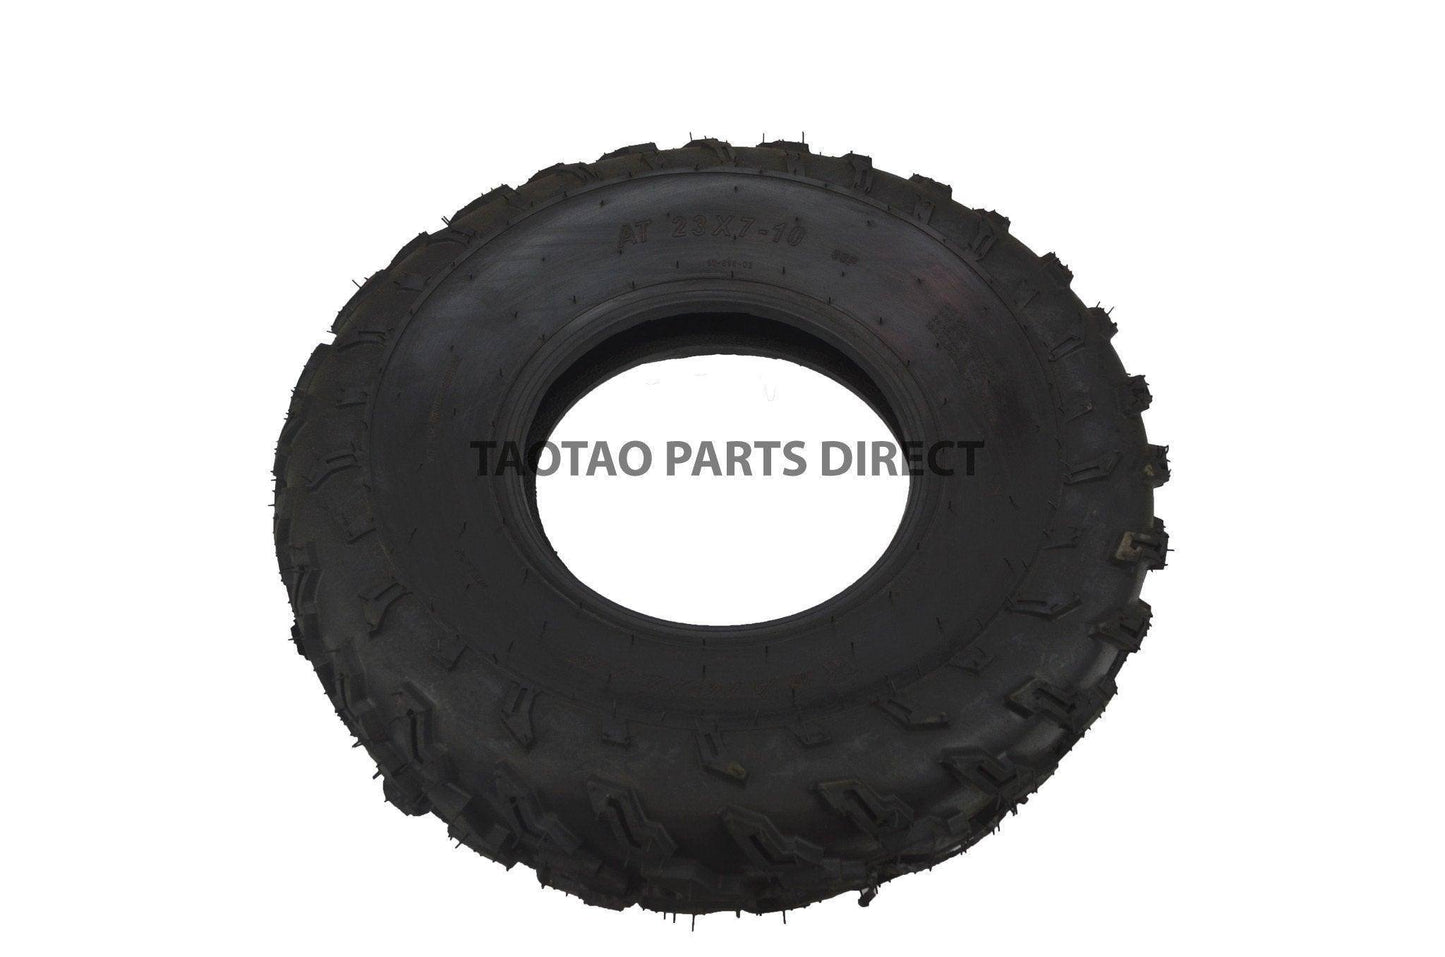 23x7-10 Tire - TaoTao Parts Direct